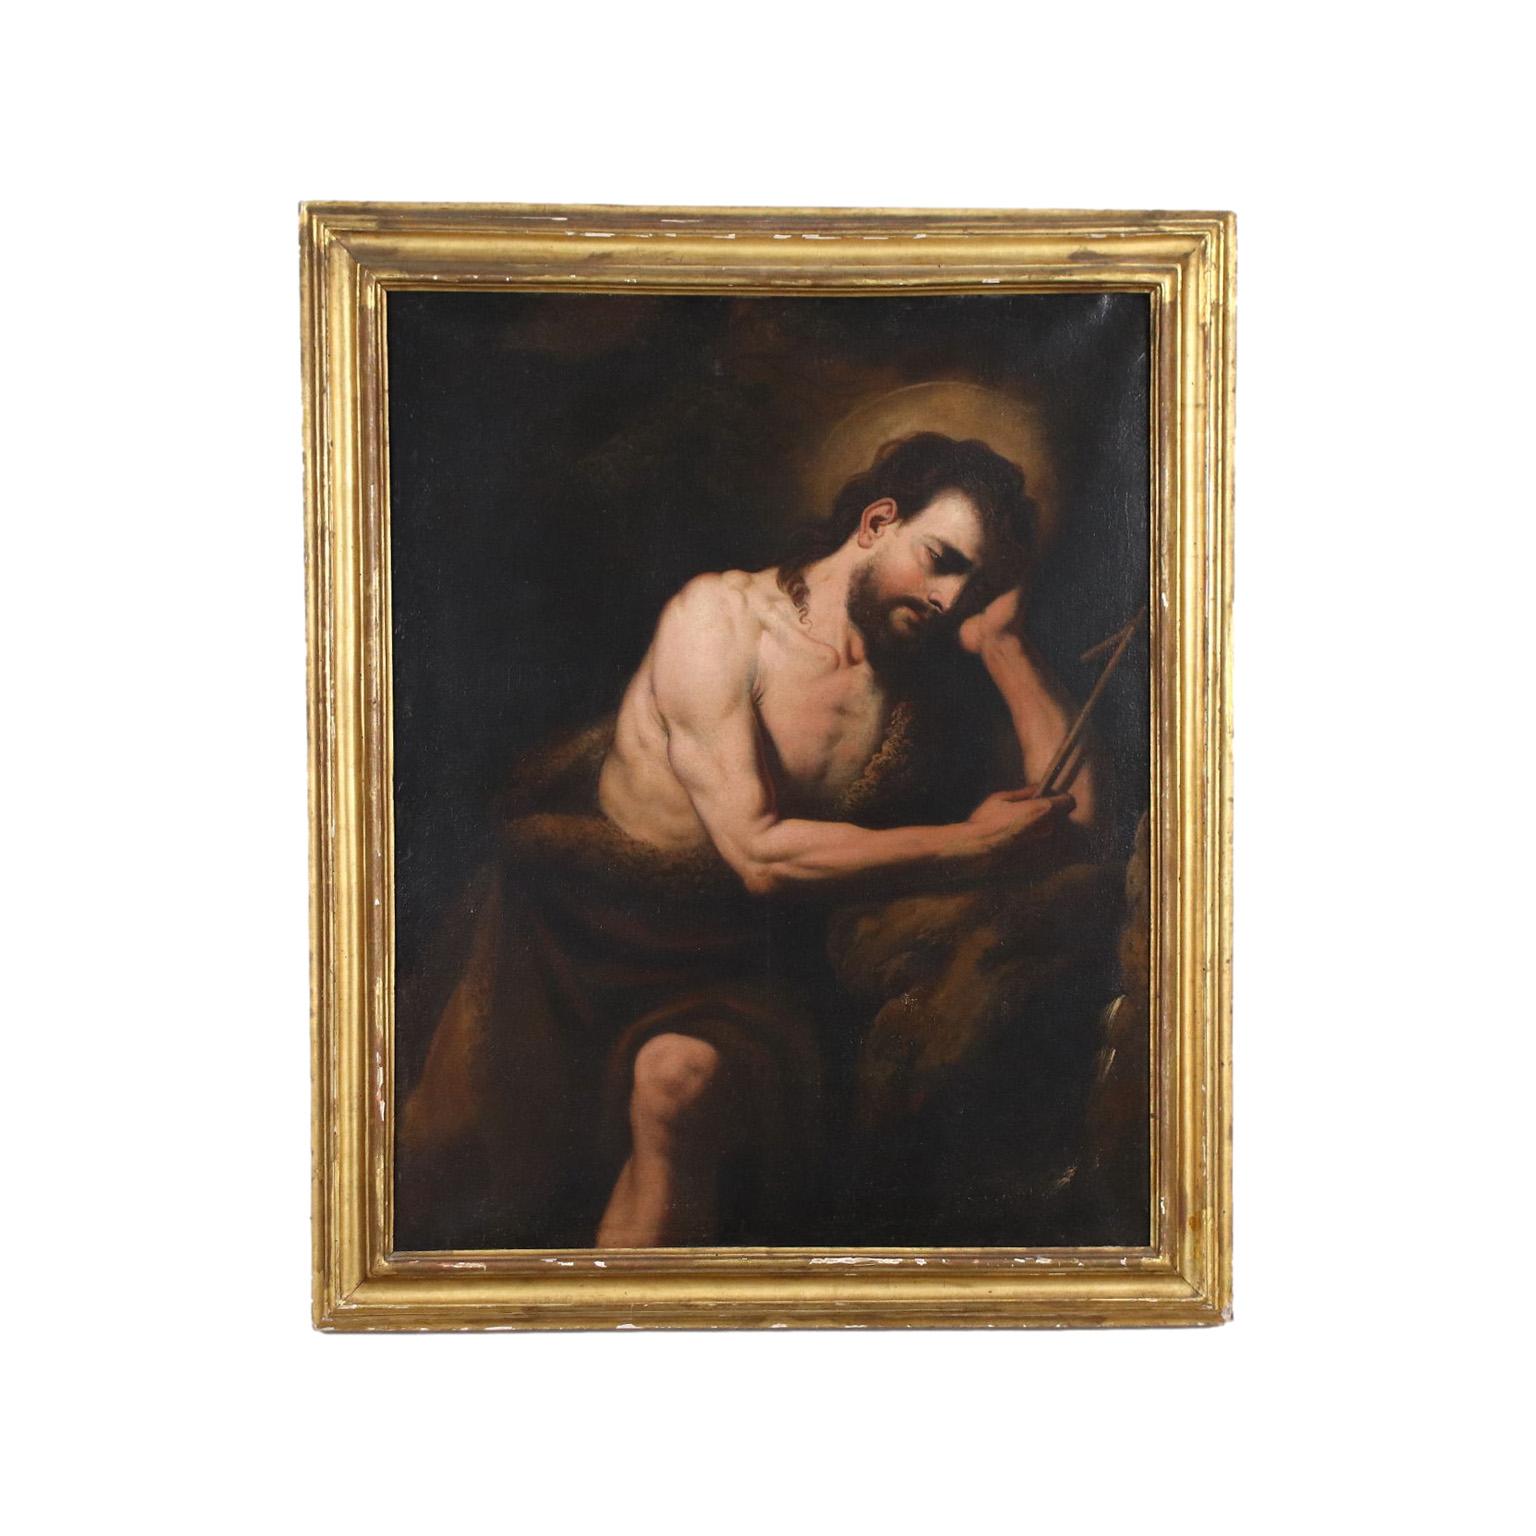 Unknown Figurative Painting - St. John Baptist, XVIIth century